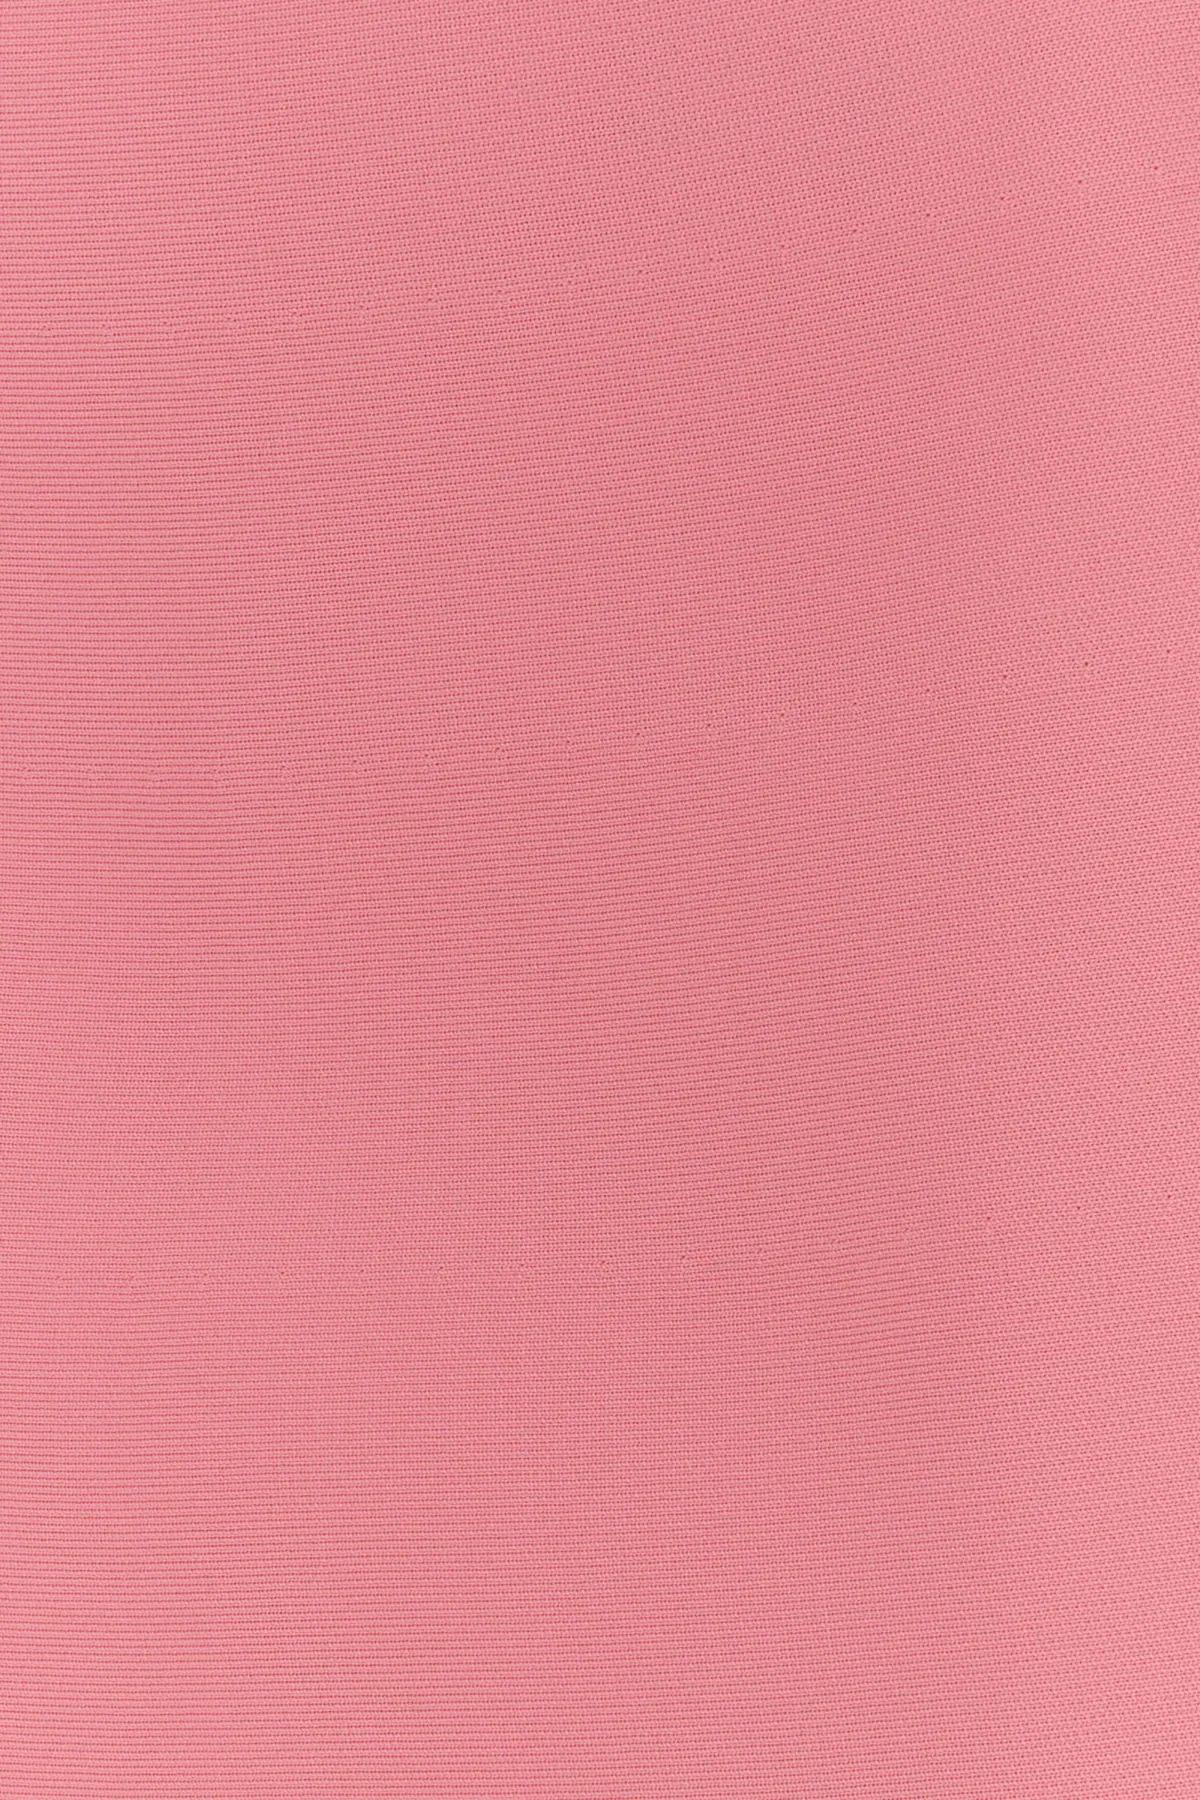 Shop Jil Sander Polyester Mini Skirt In Rosa